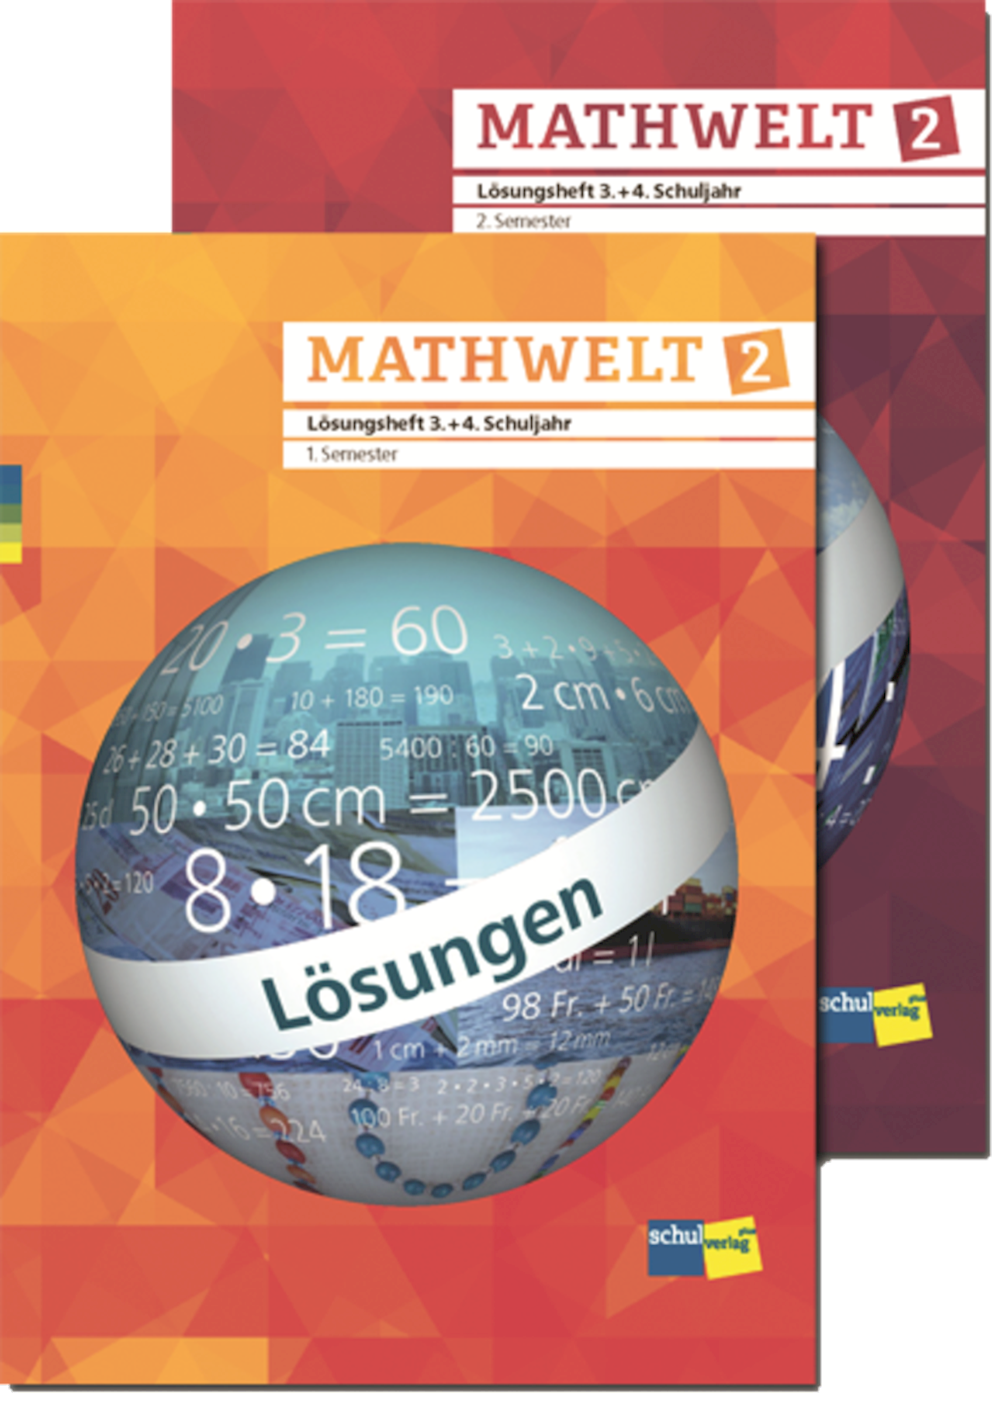 Mathwelt 2 2 Lösungshefte 3. + 4. Schuljahr